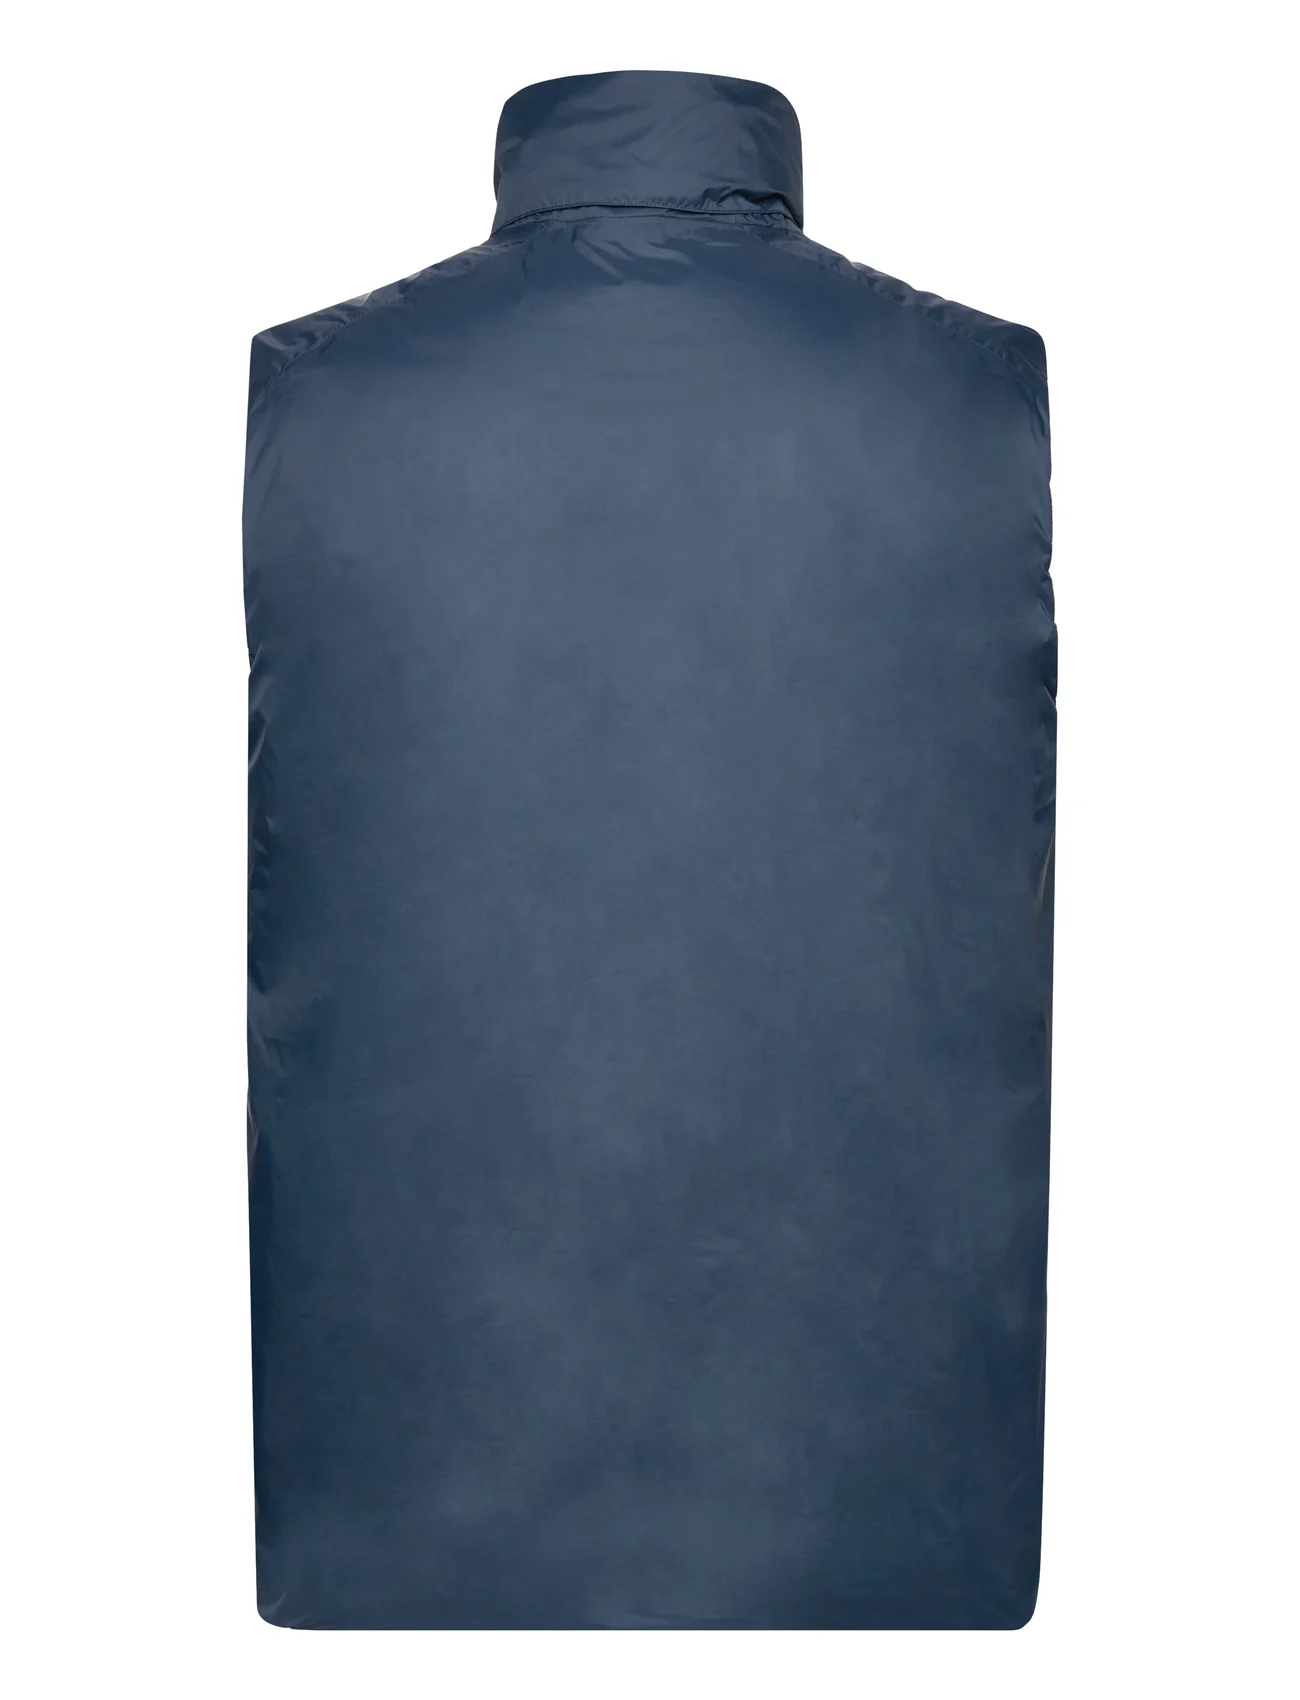 Tenson - Transition Vest Men - friluftsjackor - dark blue - 1